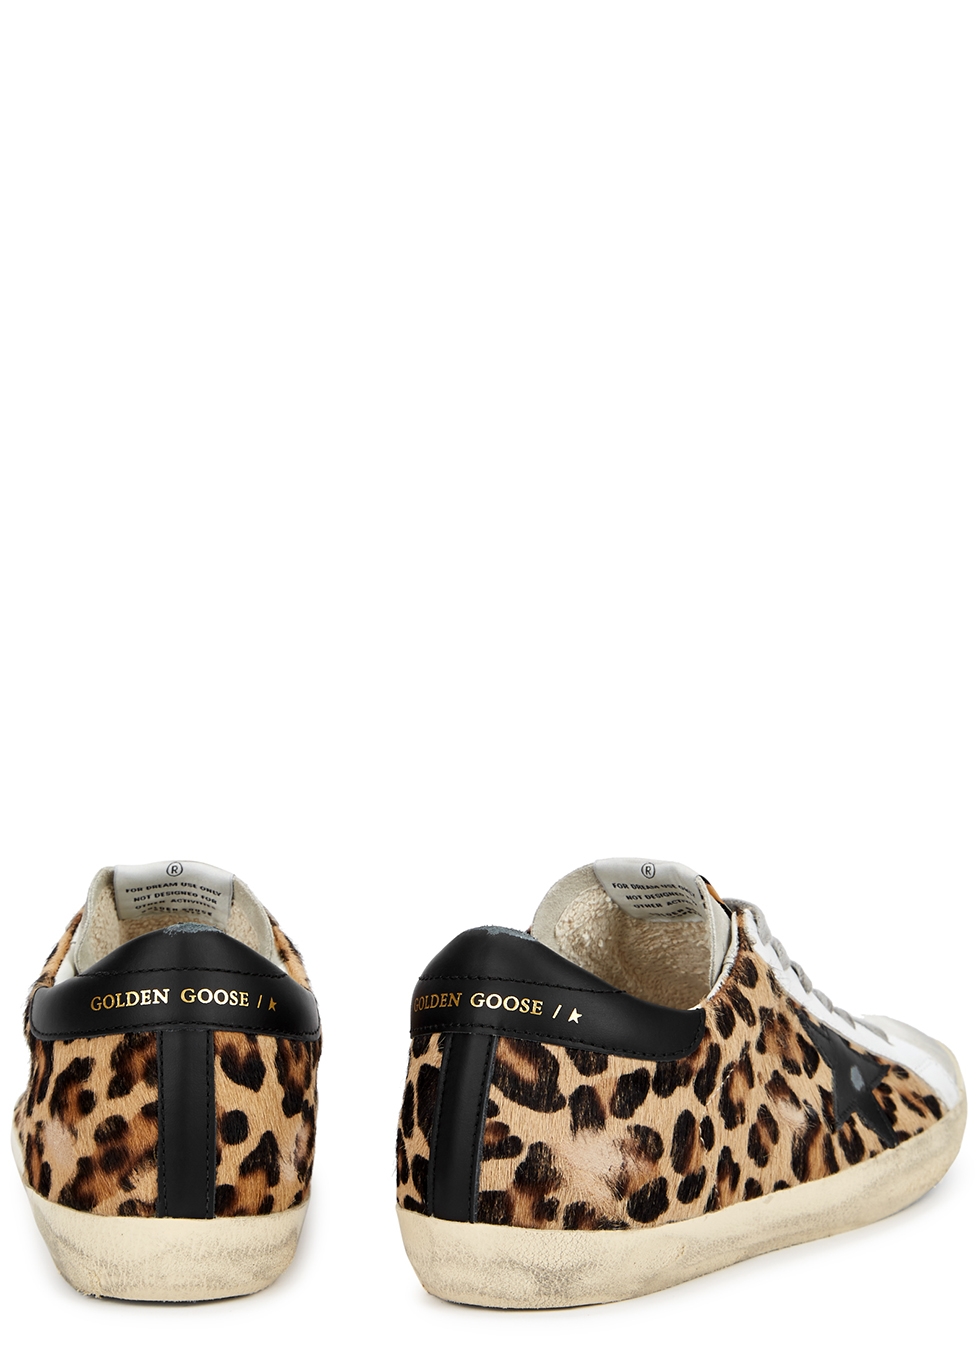 golden goose leopard sneakers womens